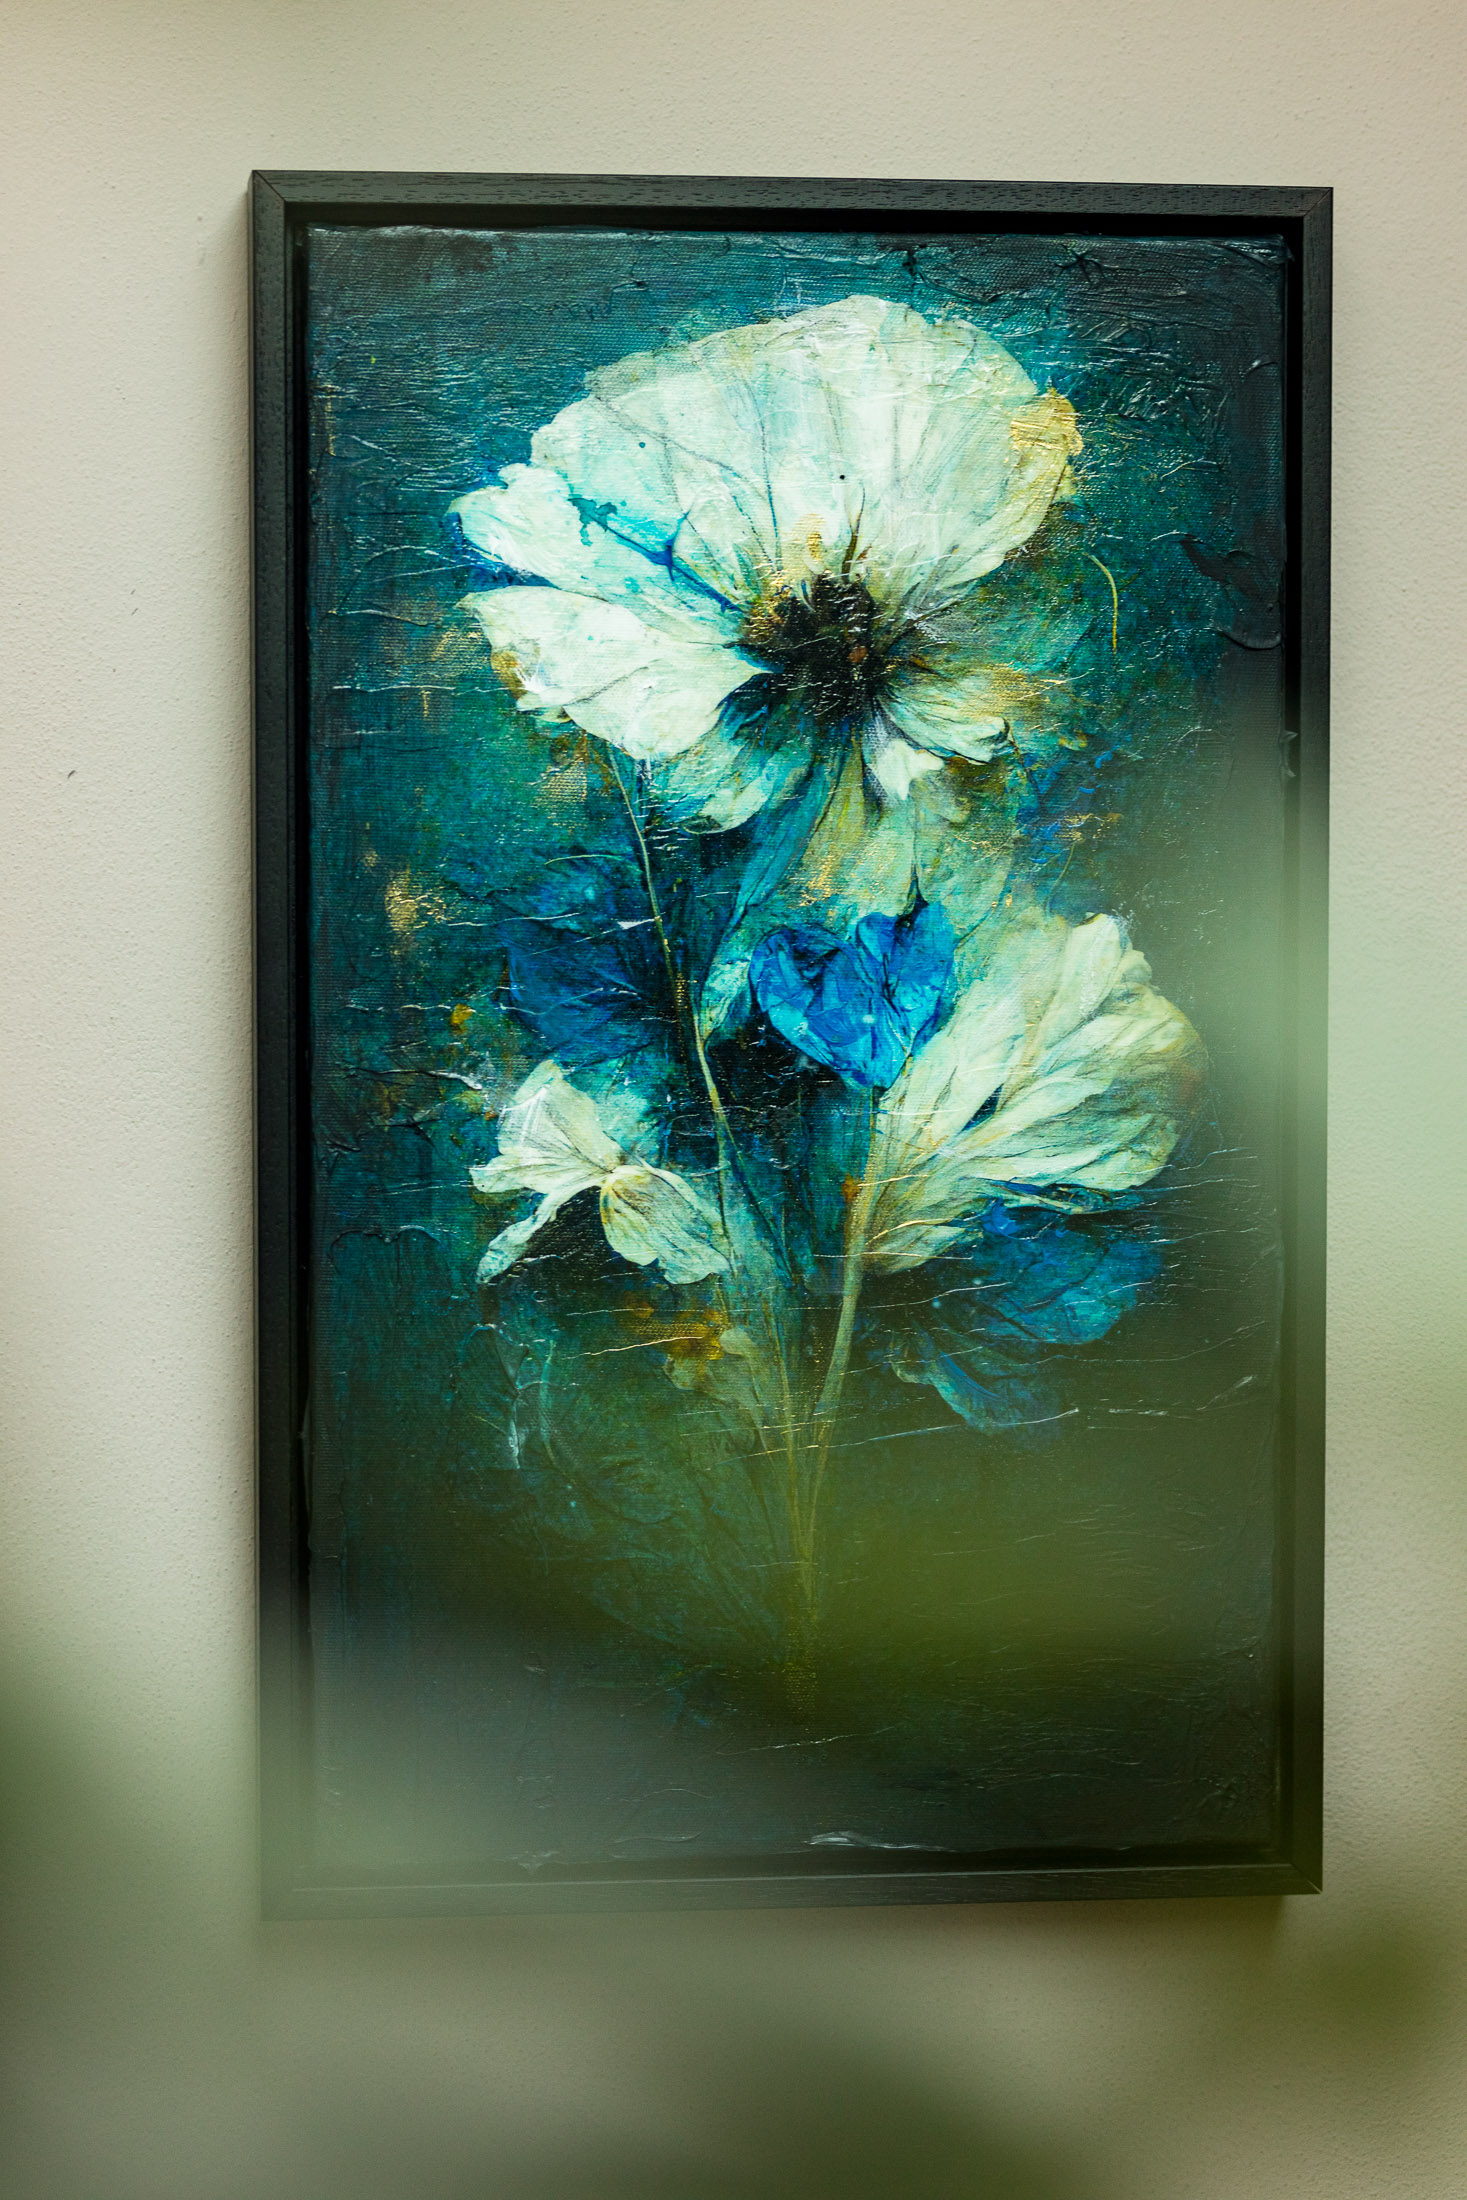 Kunst: Floral Decay IX van kunstenaar Teis Albers